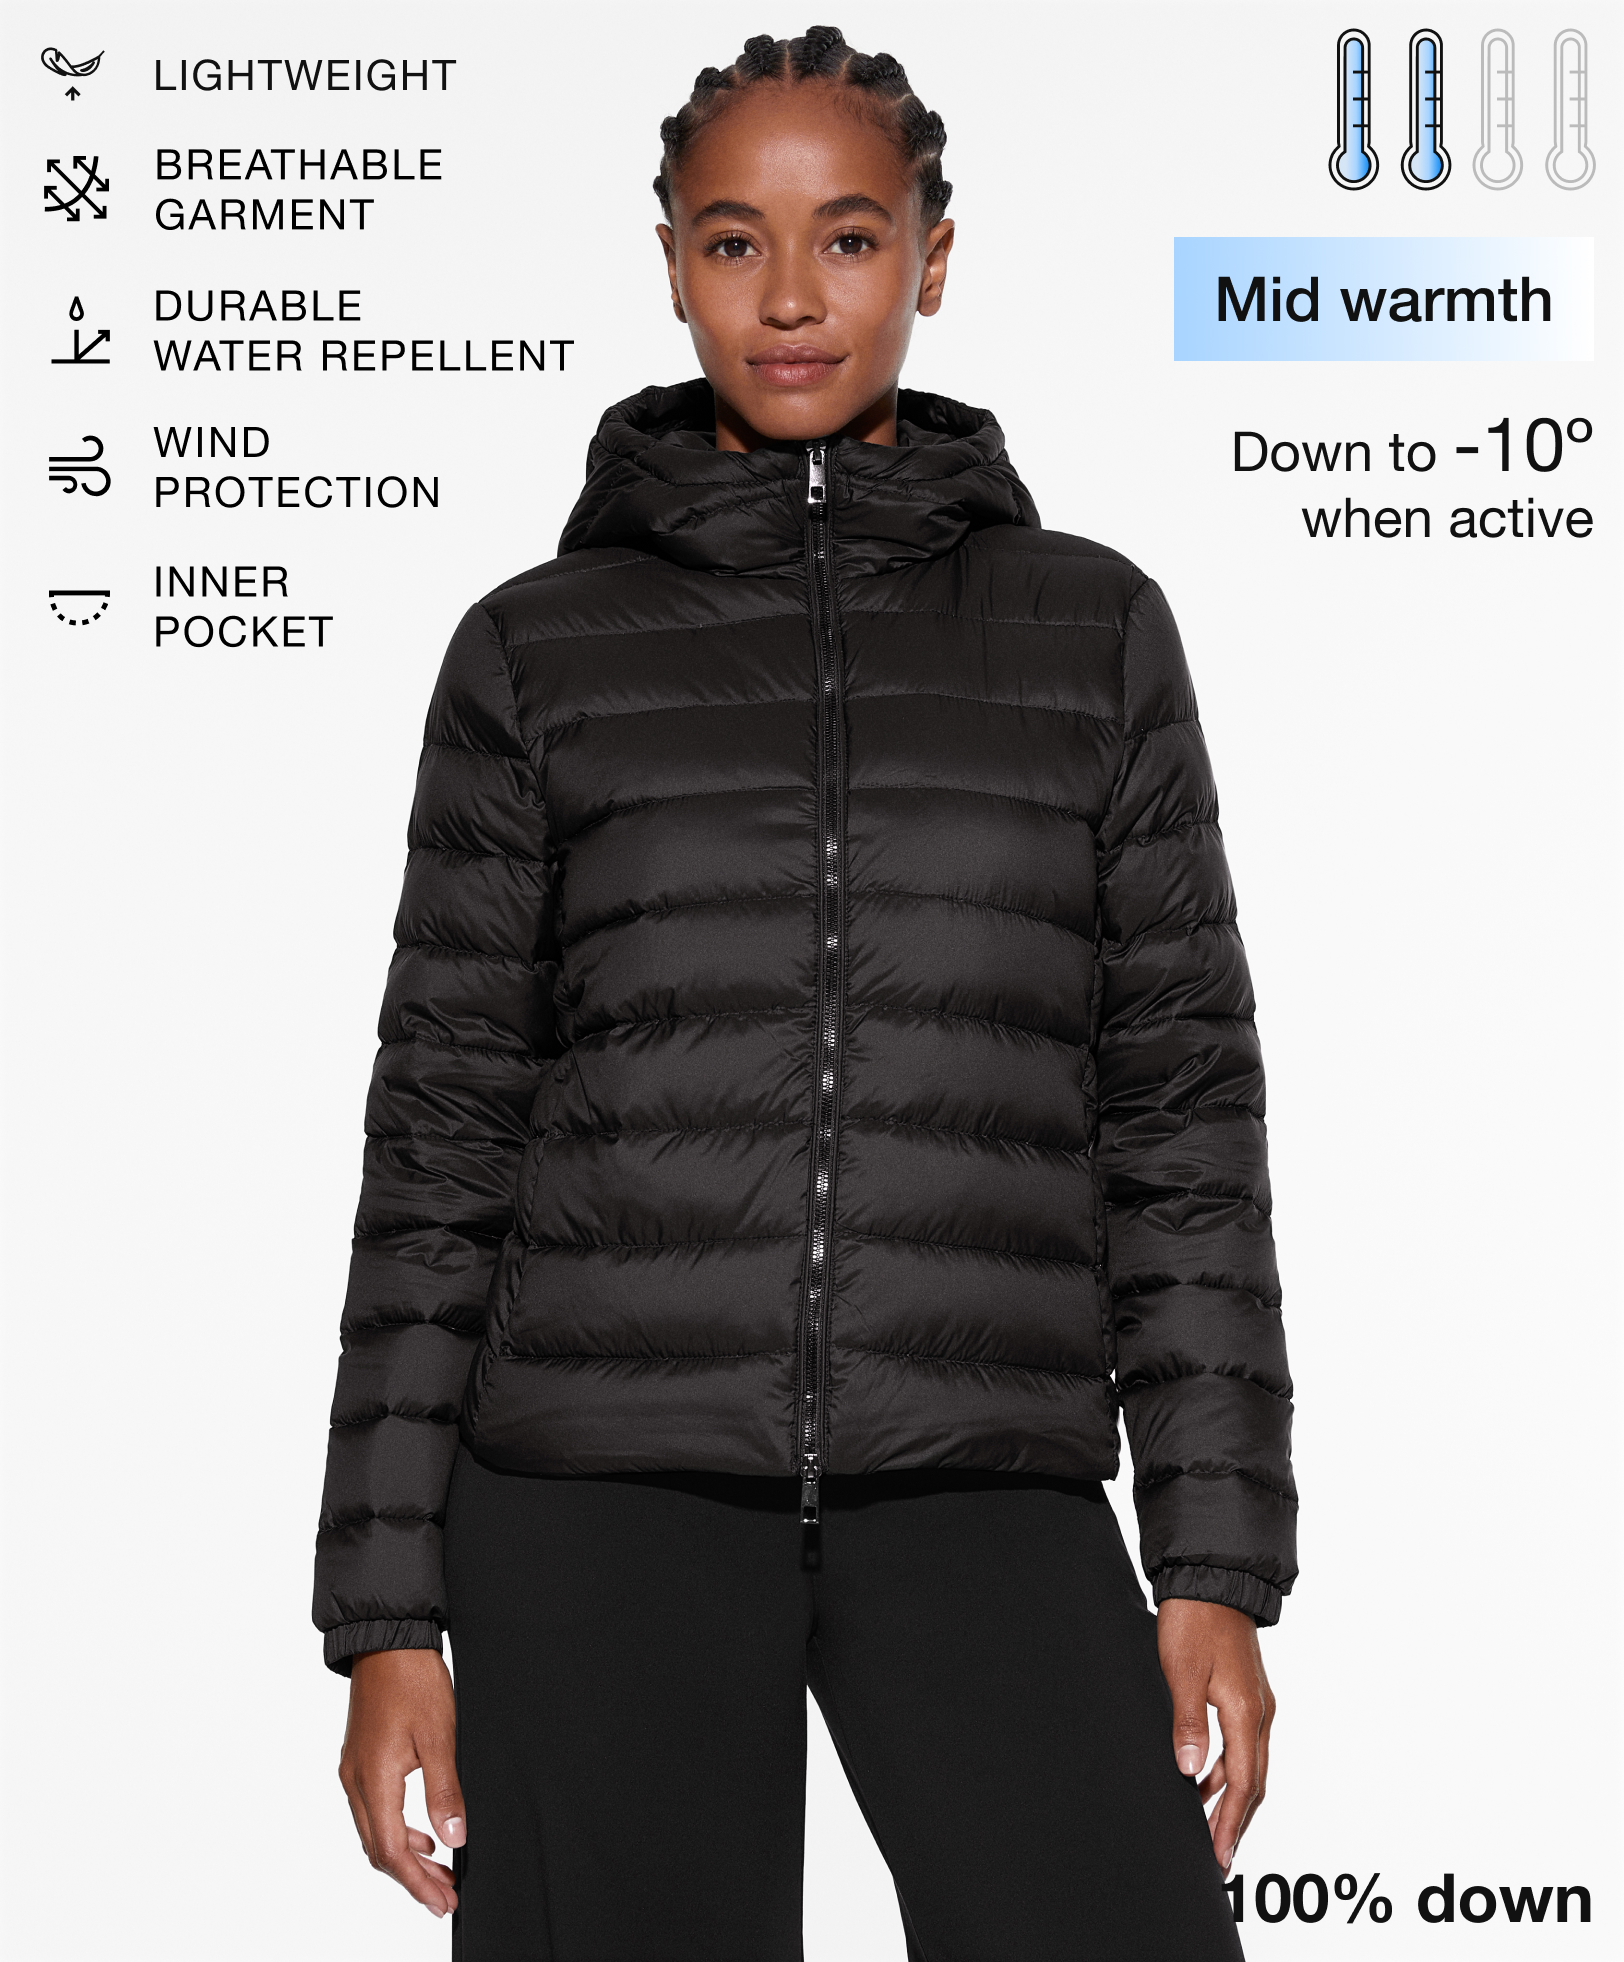 Ultralight waterafstotend jasje met 100% dons